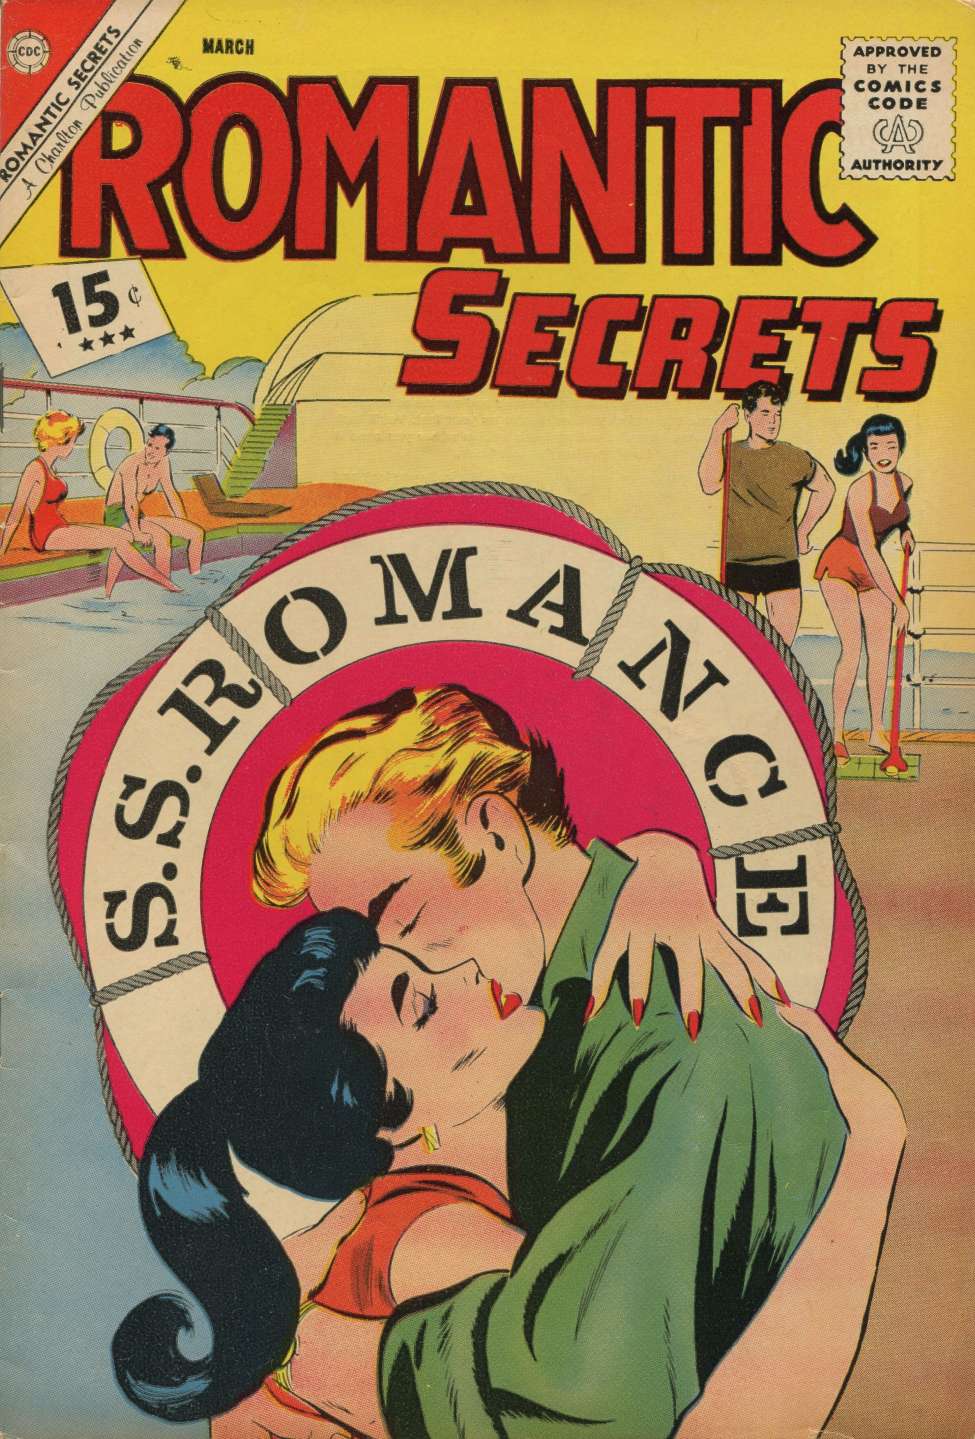 Book Cover For Romantic Secrets 37